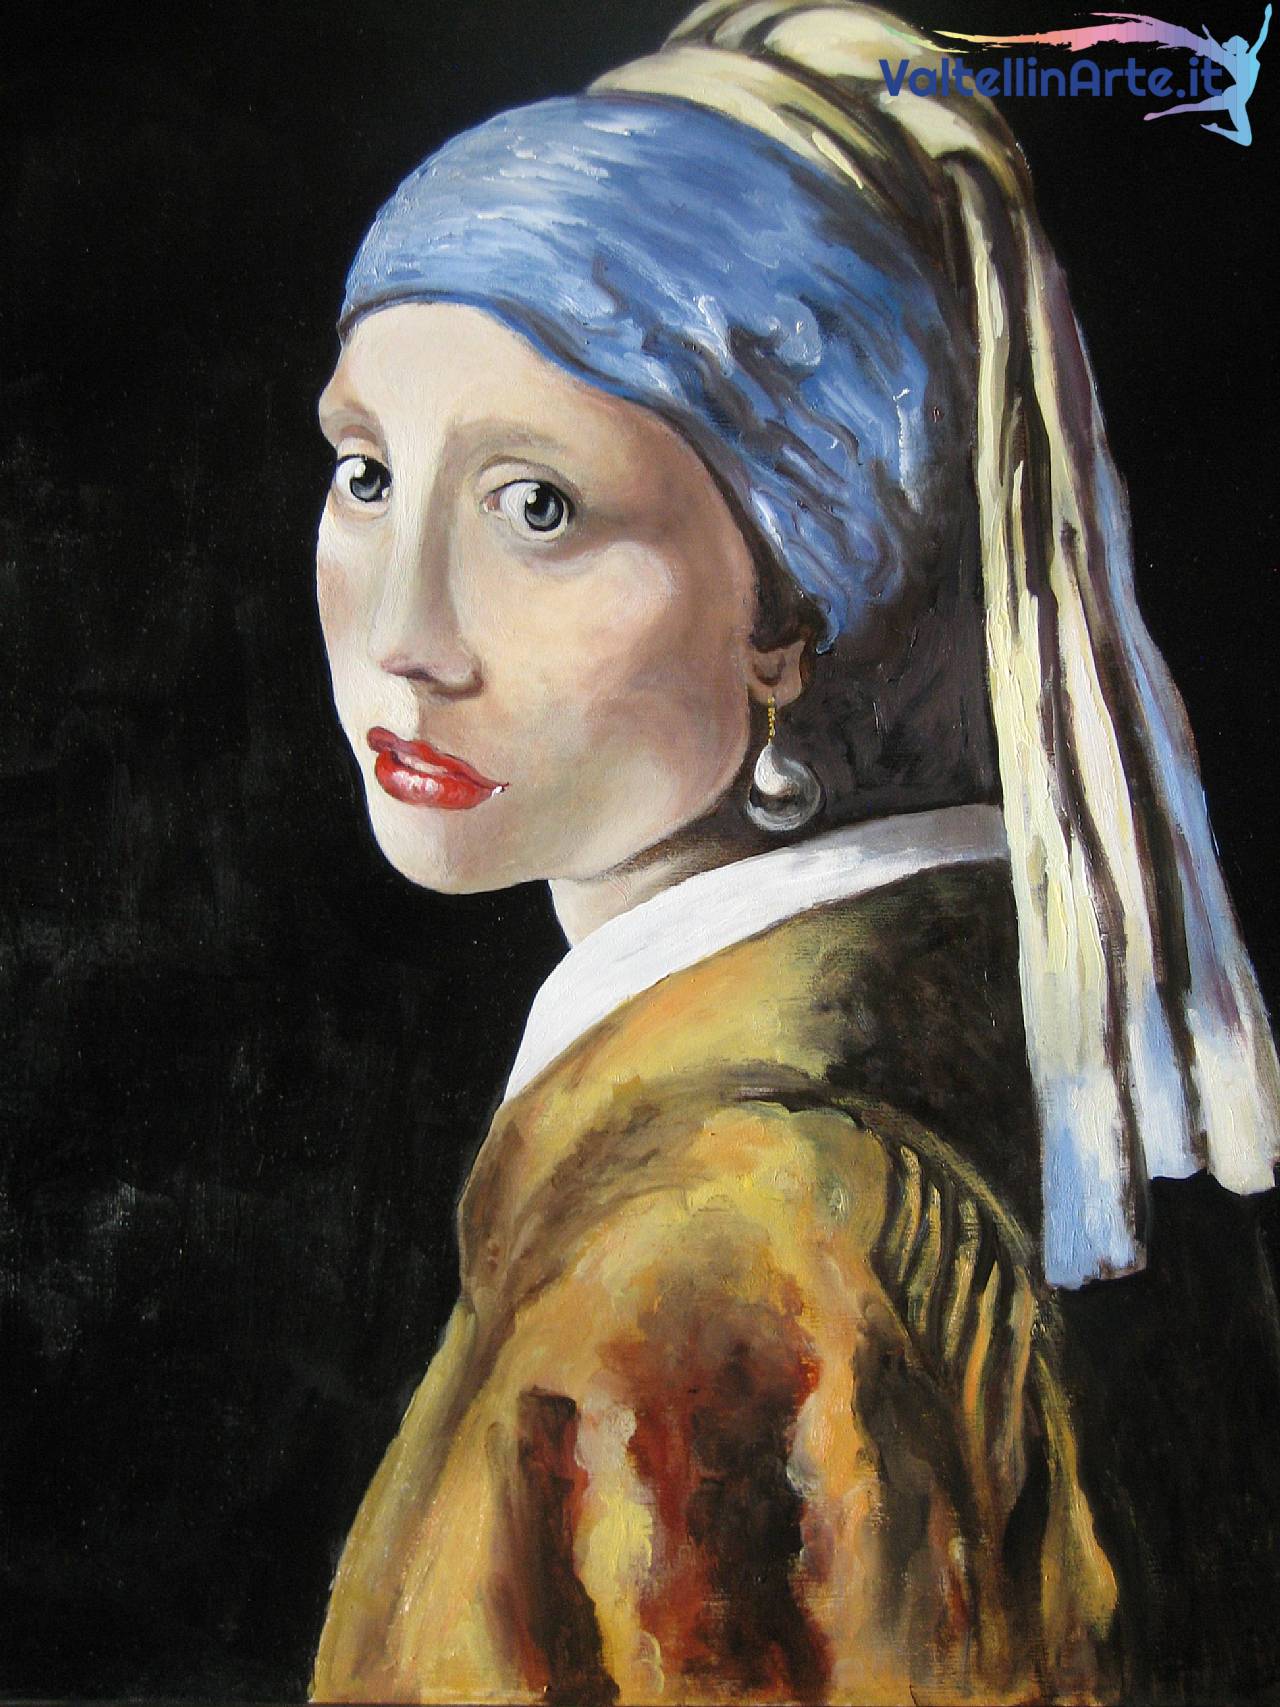 La ragazza con l'orecchino (omaggio a Jan Vermeer